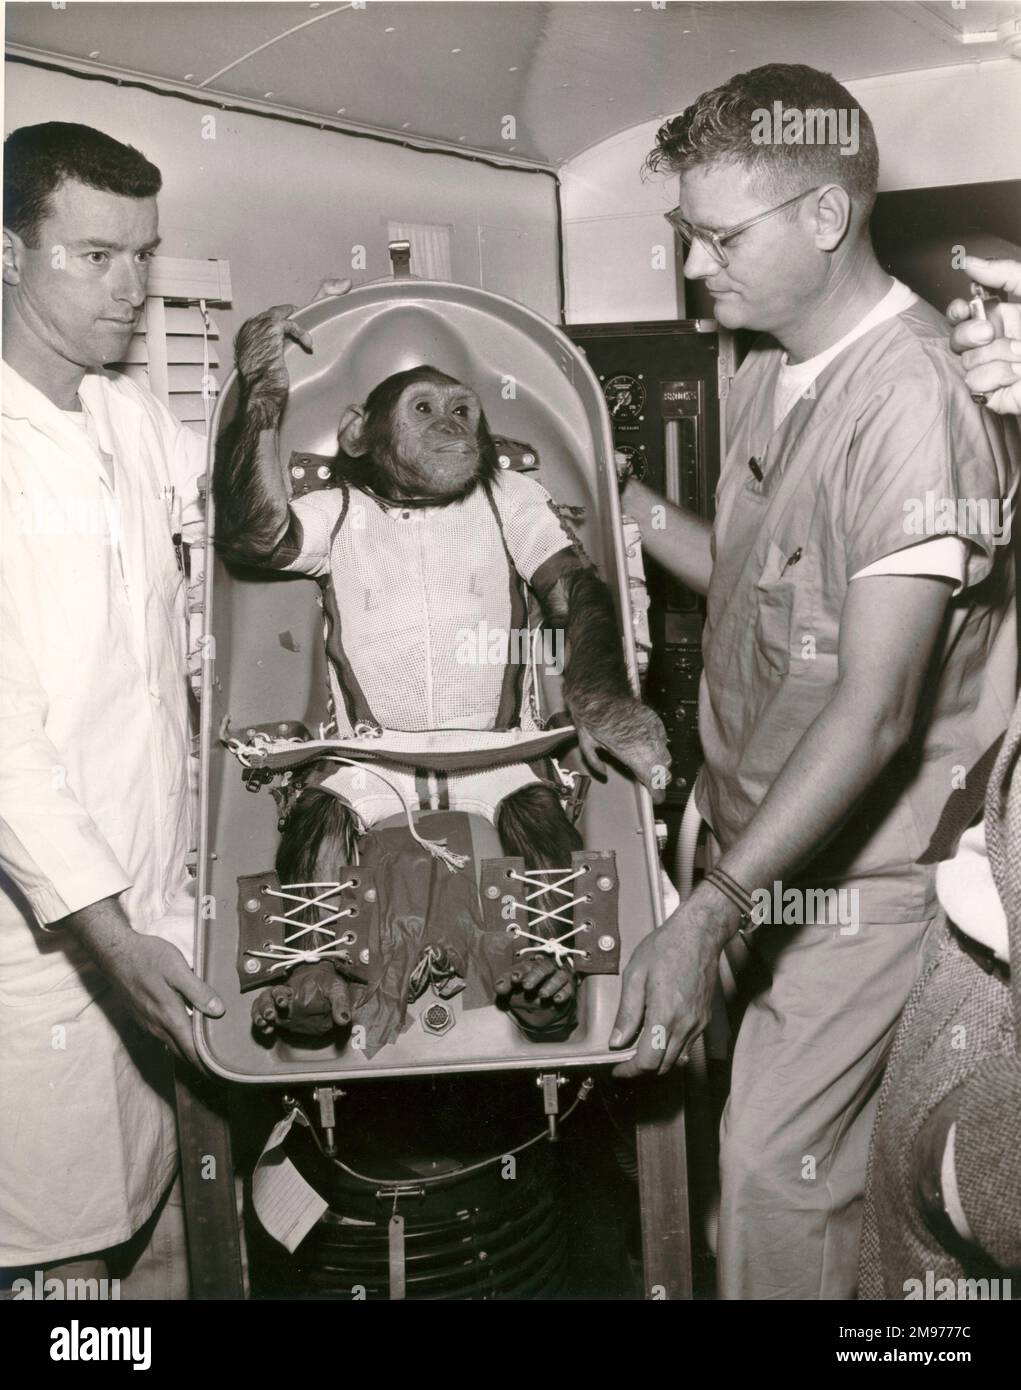 Ham, un chimpanzé de 37 livres, est devenu le premier « astronaute » américain lorsqu’il a été lancé à partir du cap Canaveral à bord du vol suborbital Mercury-Redstone (MR-2) le 31 janvier 1961. Dans une note écrite le lendemain, Warren J. North de la NASA faisait remarquer : « Ham semblait être en bon état physiologique, mais un peu plus tard, lorsqu’on lui a montré le vaisseau spatial, il était évident qu’il n’avait plus d’intérêt à coopérer avec le programme de vol spatial. » Banque D'Images